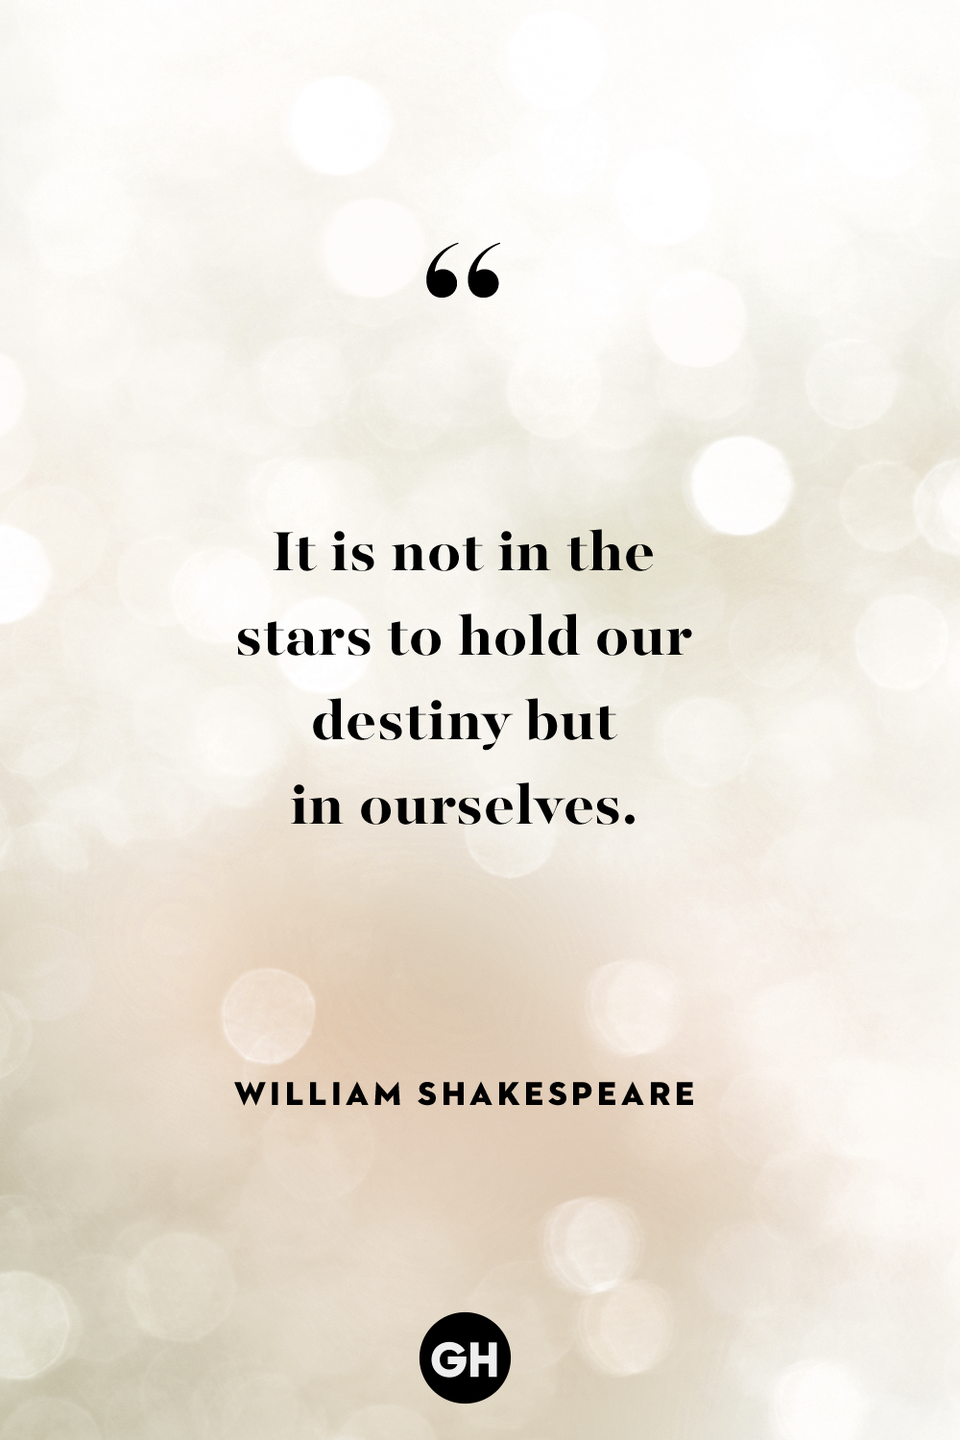 38) William Shakespeare